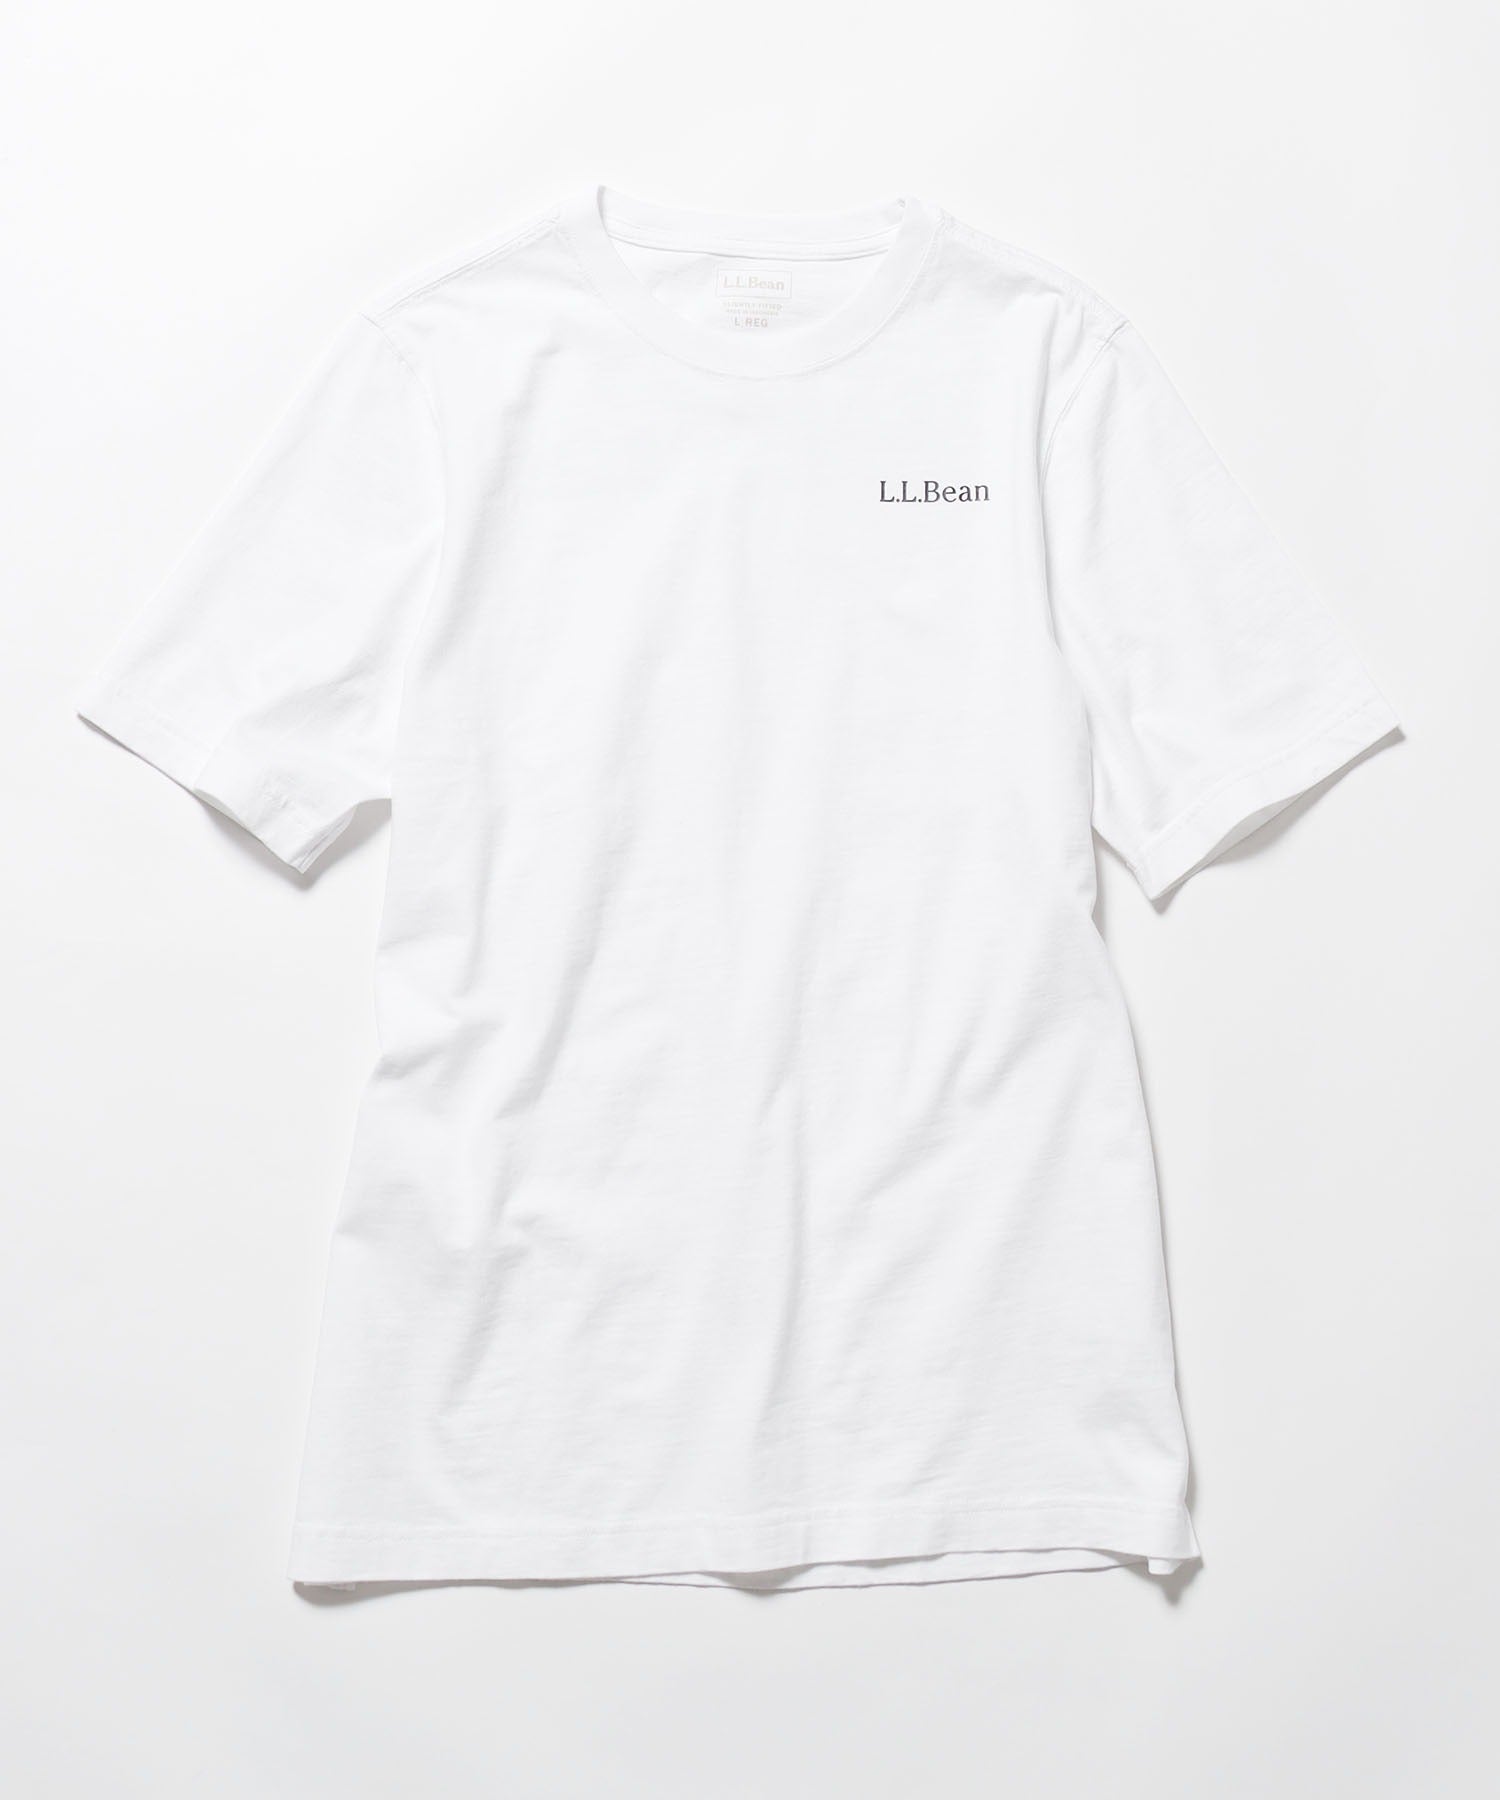 L.L.Bean/エル・エル・ビーン レイクウォッシュ オーガニック コットン グラフィックT Tシャツ